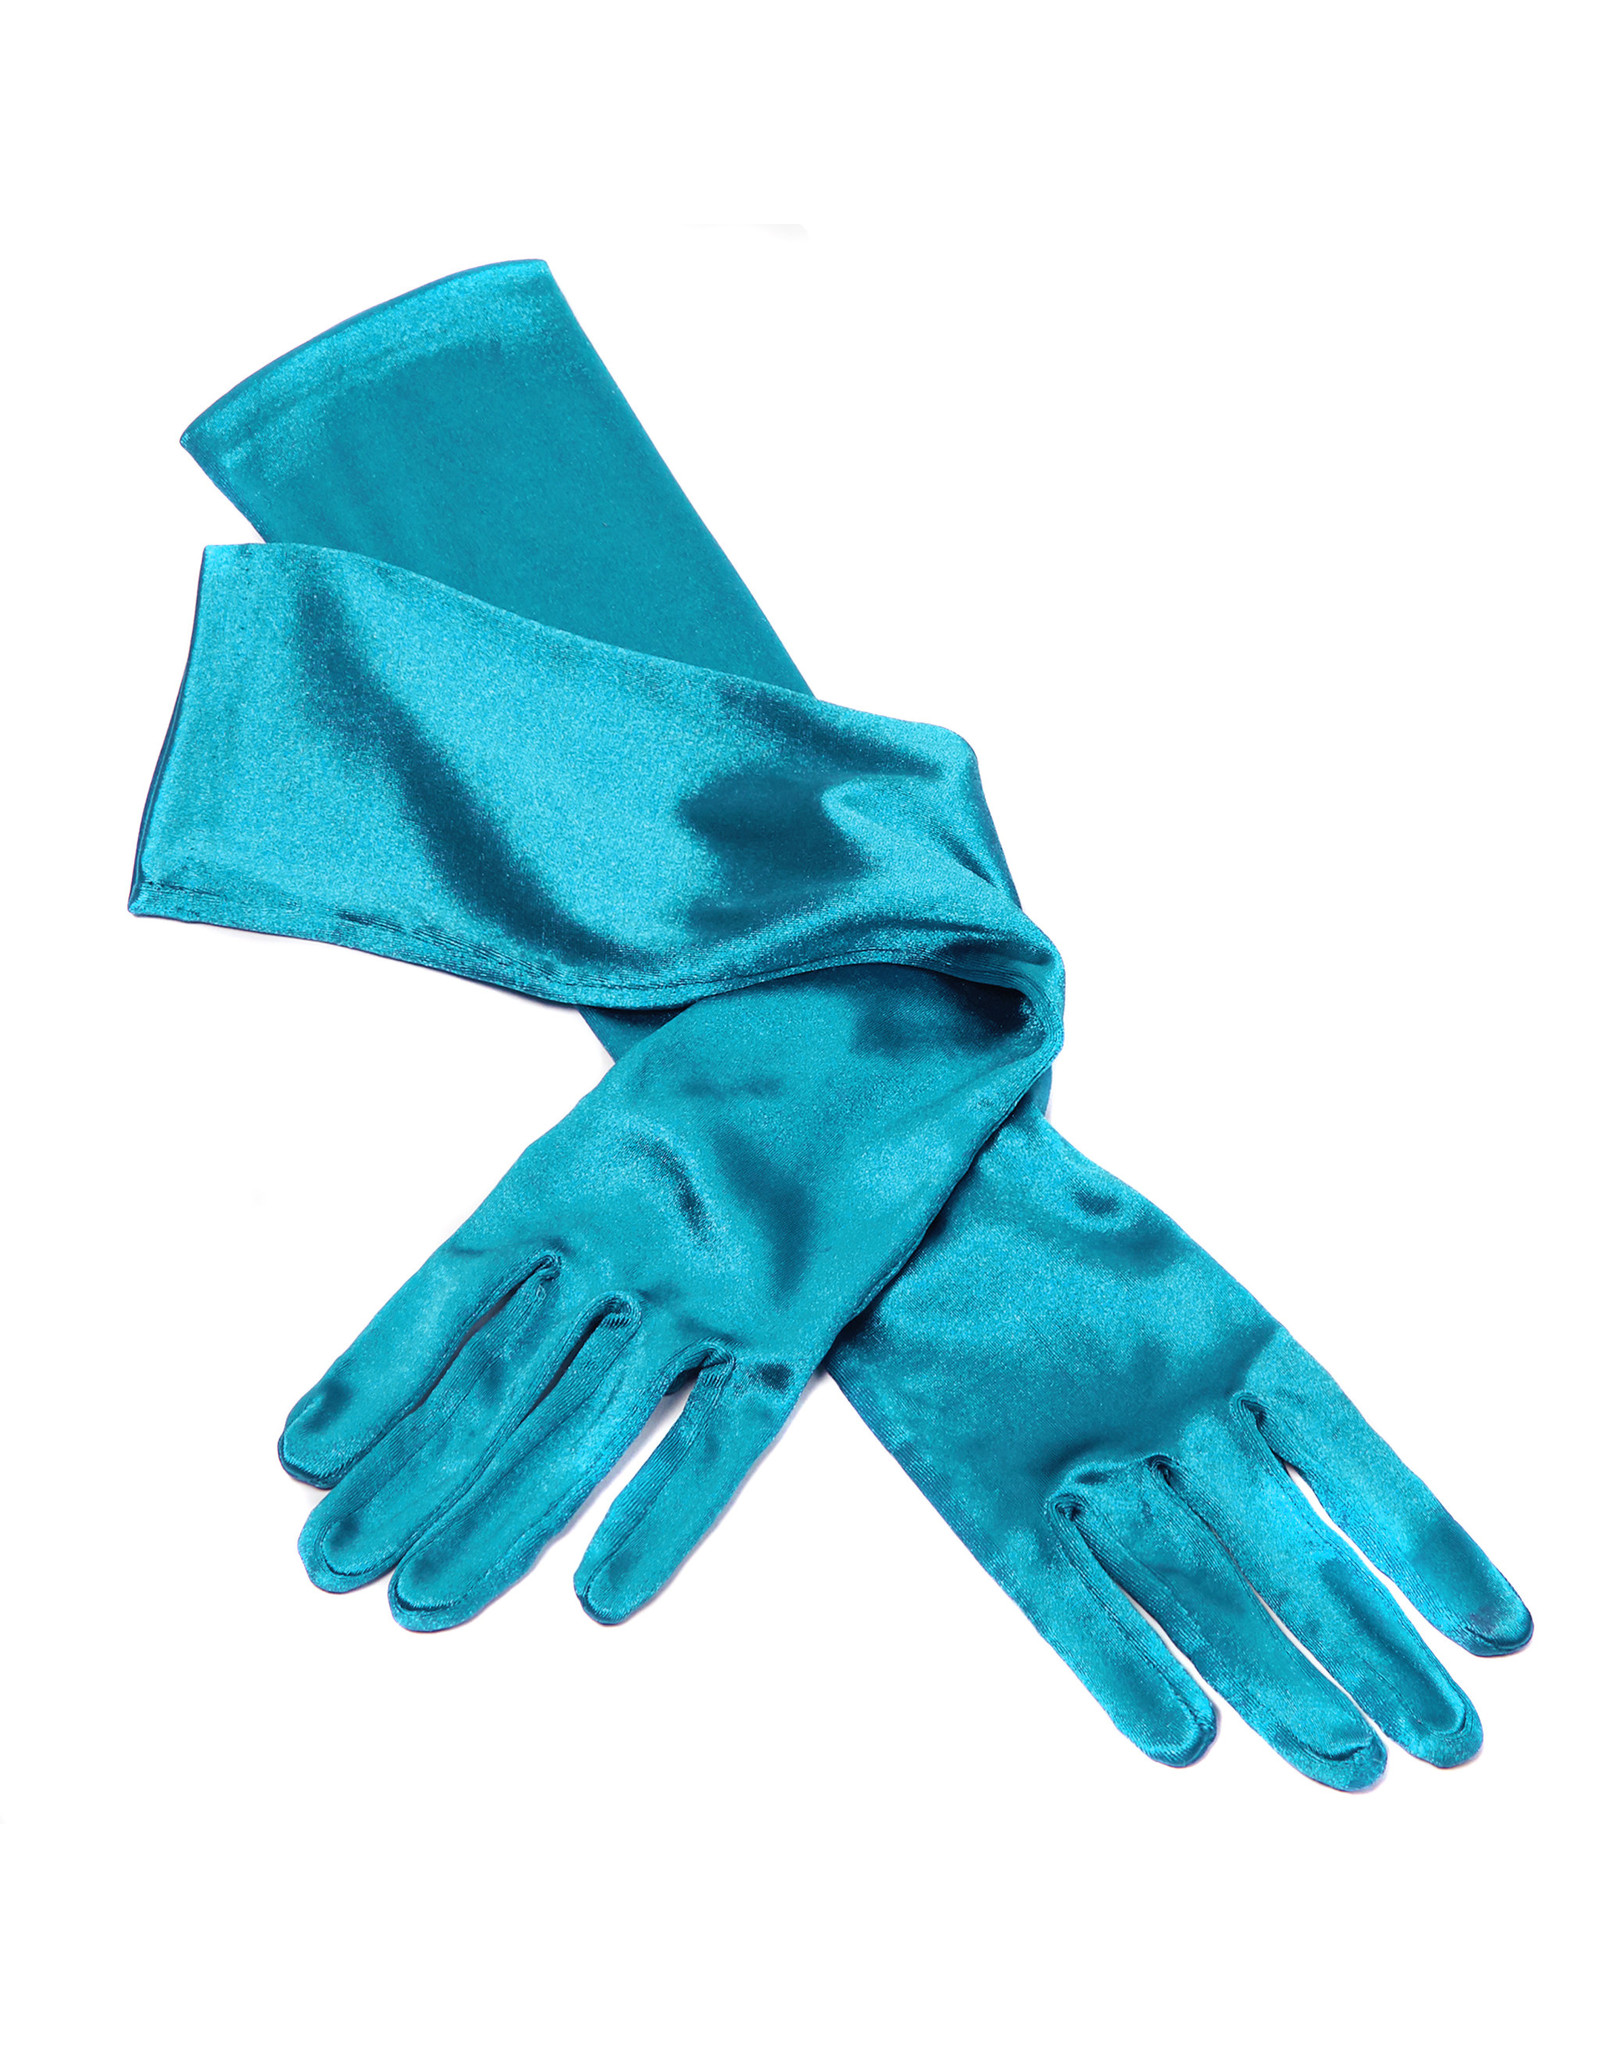 Gala handschoenen elastisch 48 cm lang, Turquoise